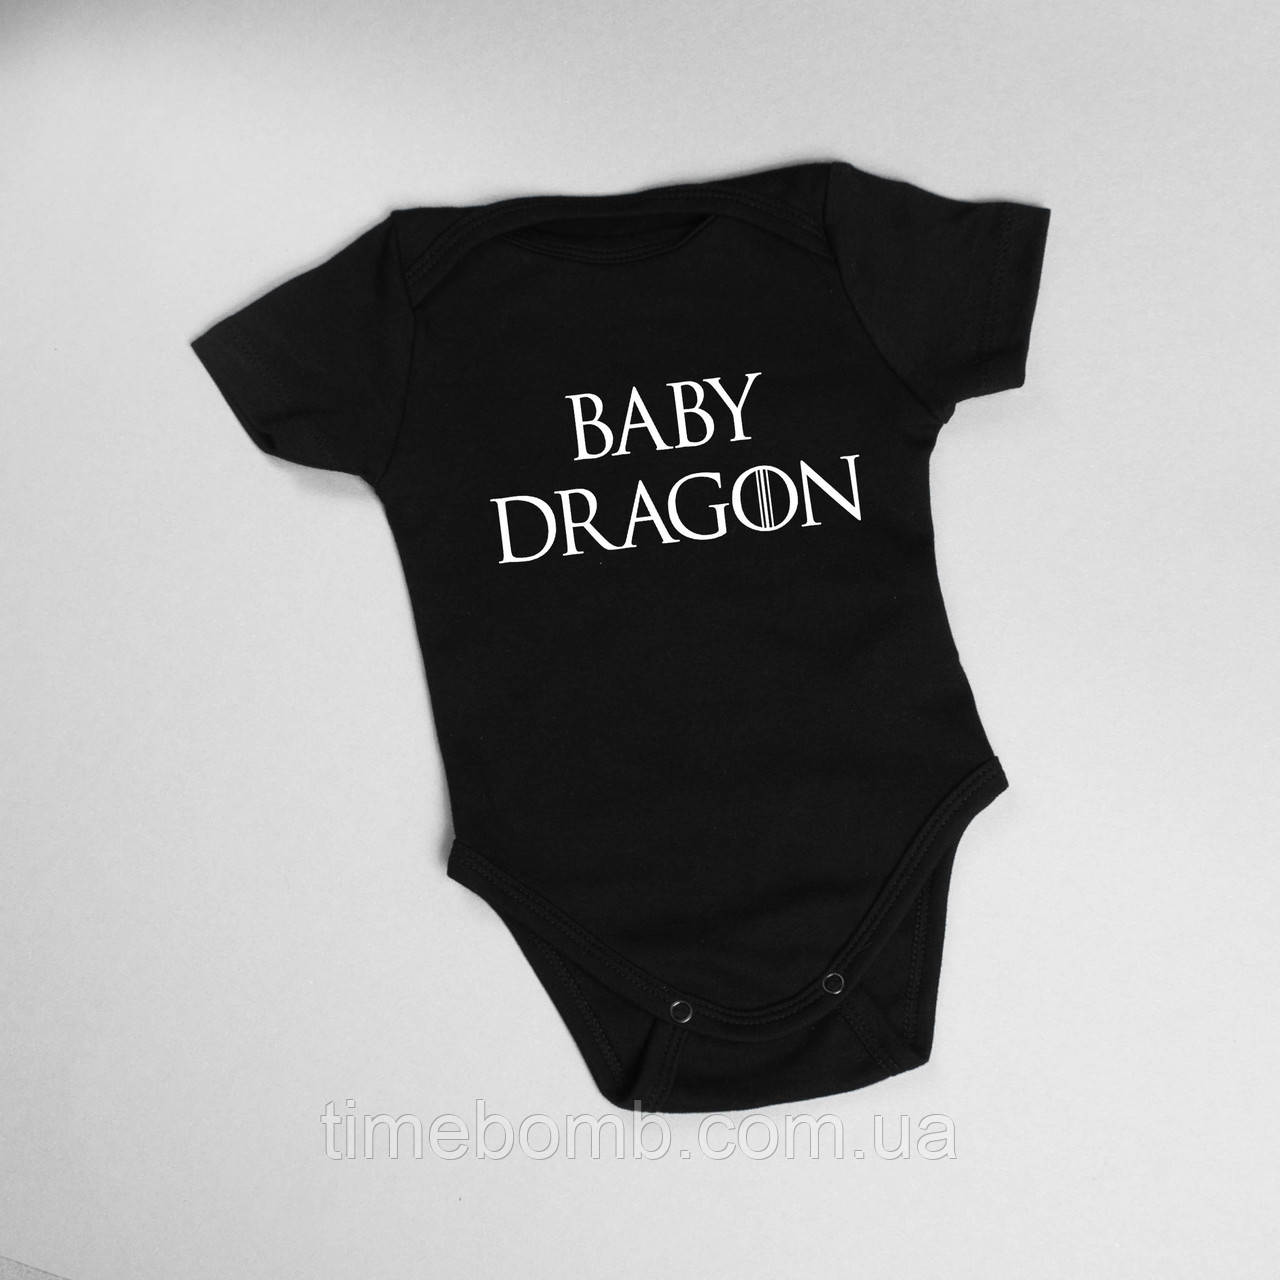 Бодік GoT "Baby dragon", Чорний, 62 р. (0-3 міс), Black, англійська